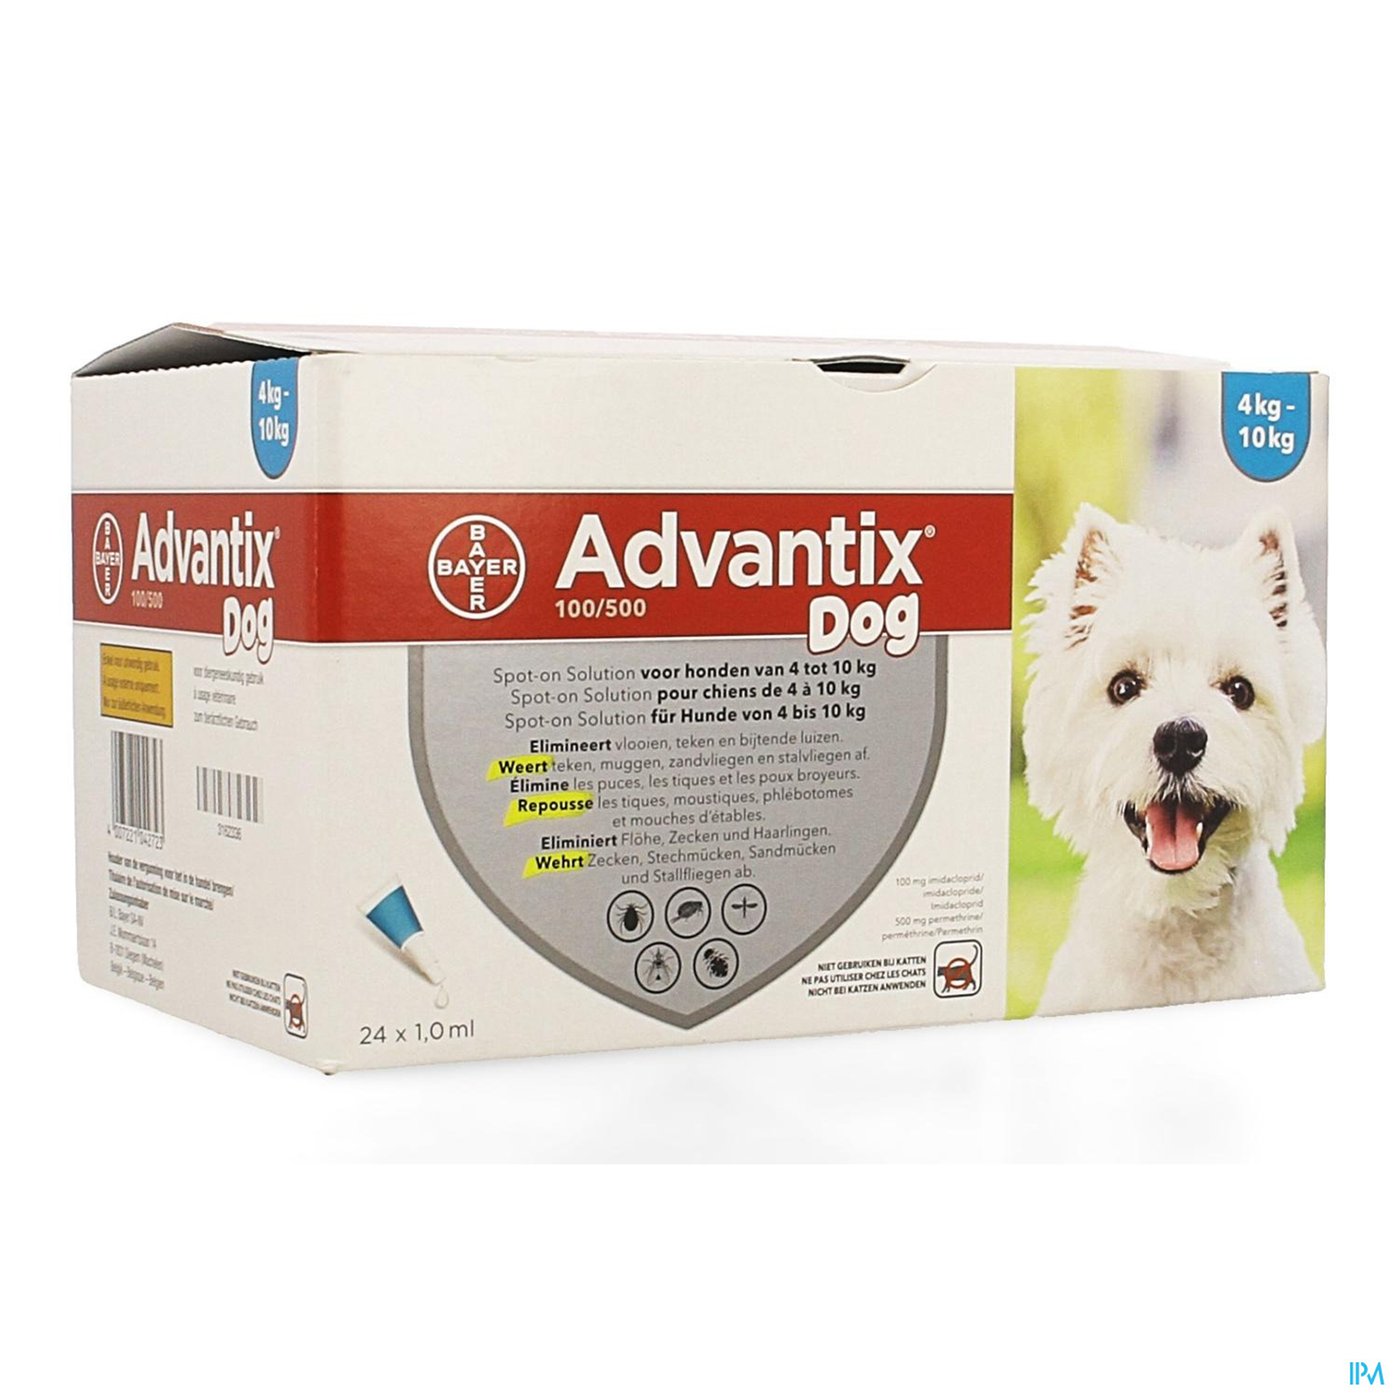 Advantix 100/ 500 Honden 4<10kg Fl 24x1,0ml packshot